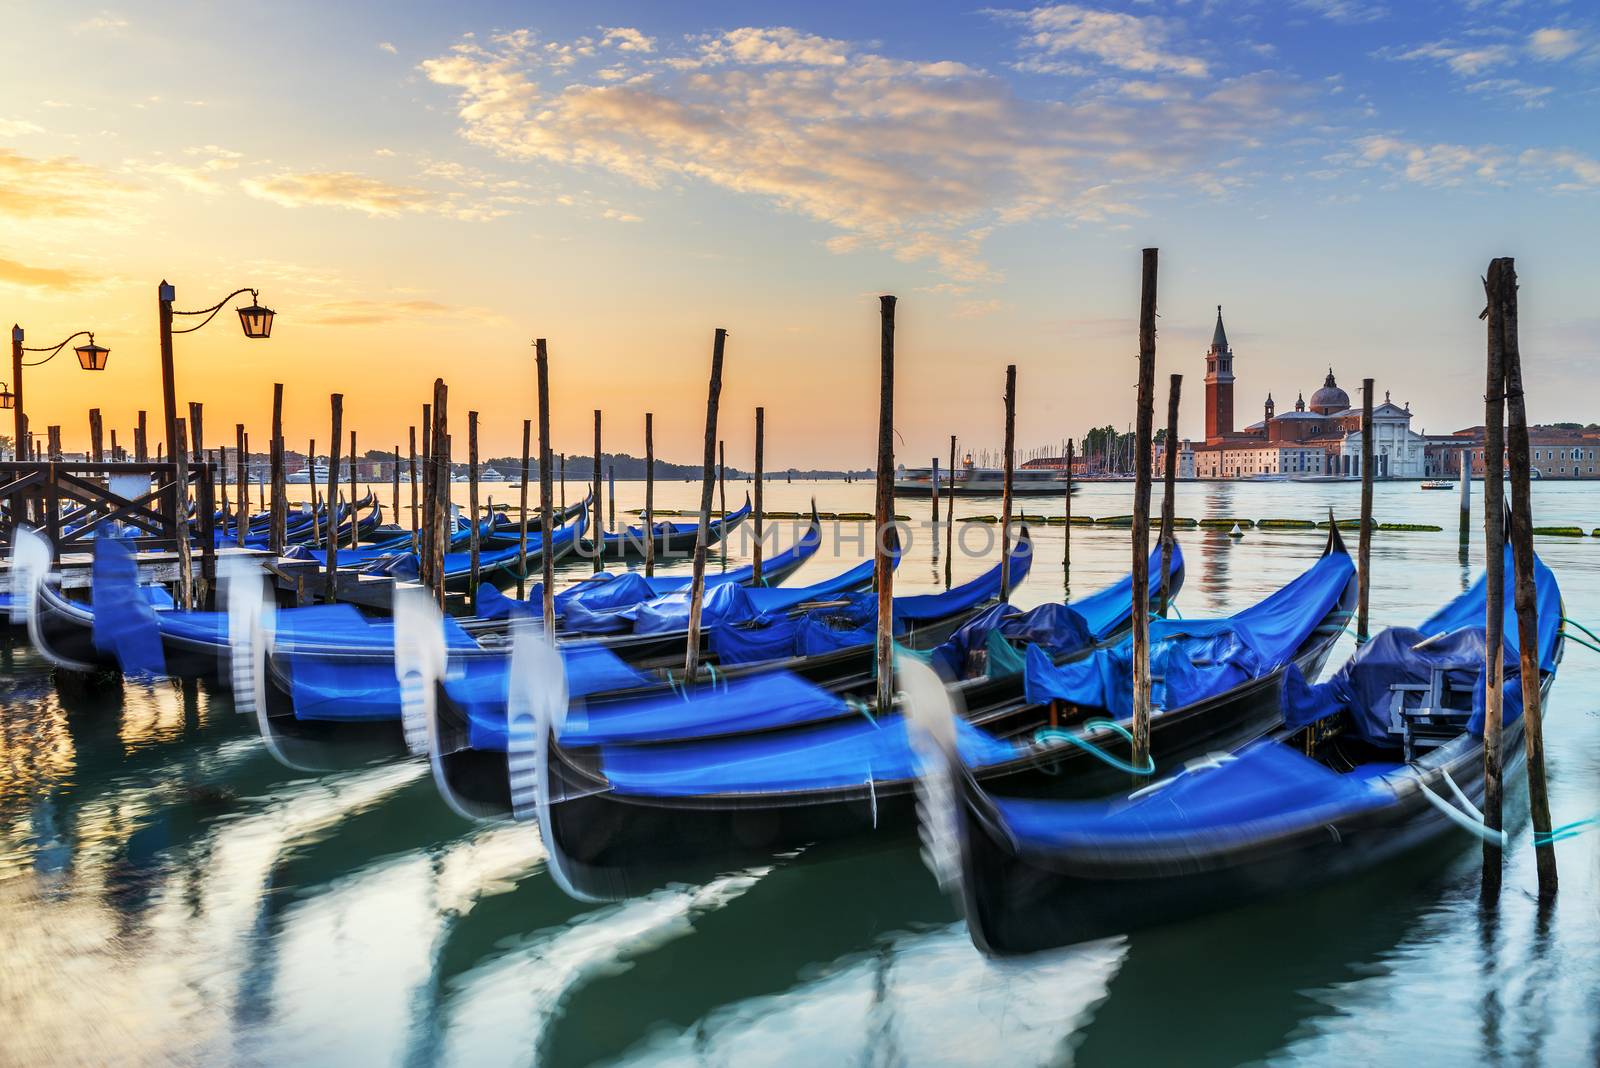 Gondolas moored by Saint Mark square with San Giorgio di Maggiore church in the background - Venice, Venezia, Italy, Europe 